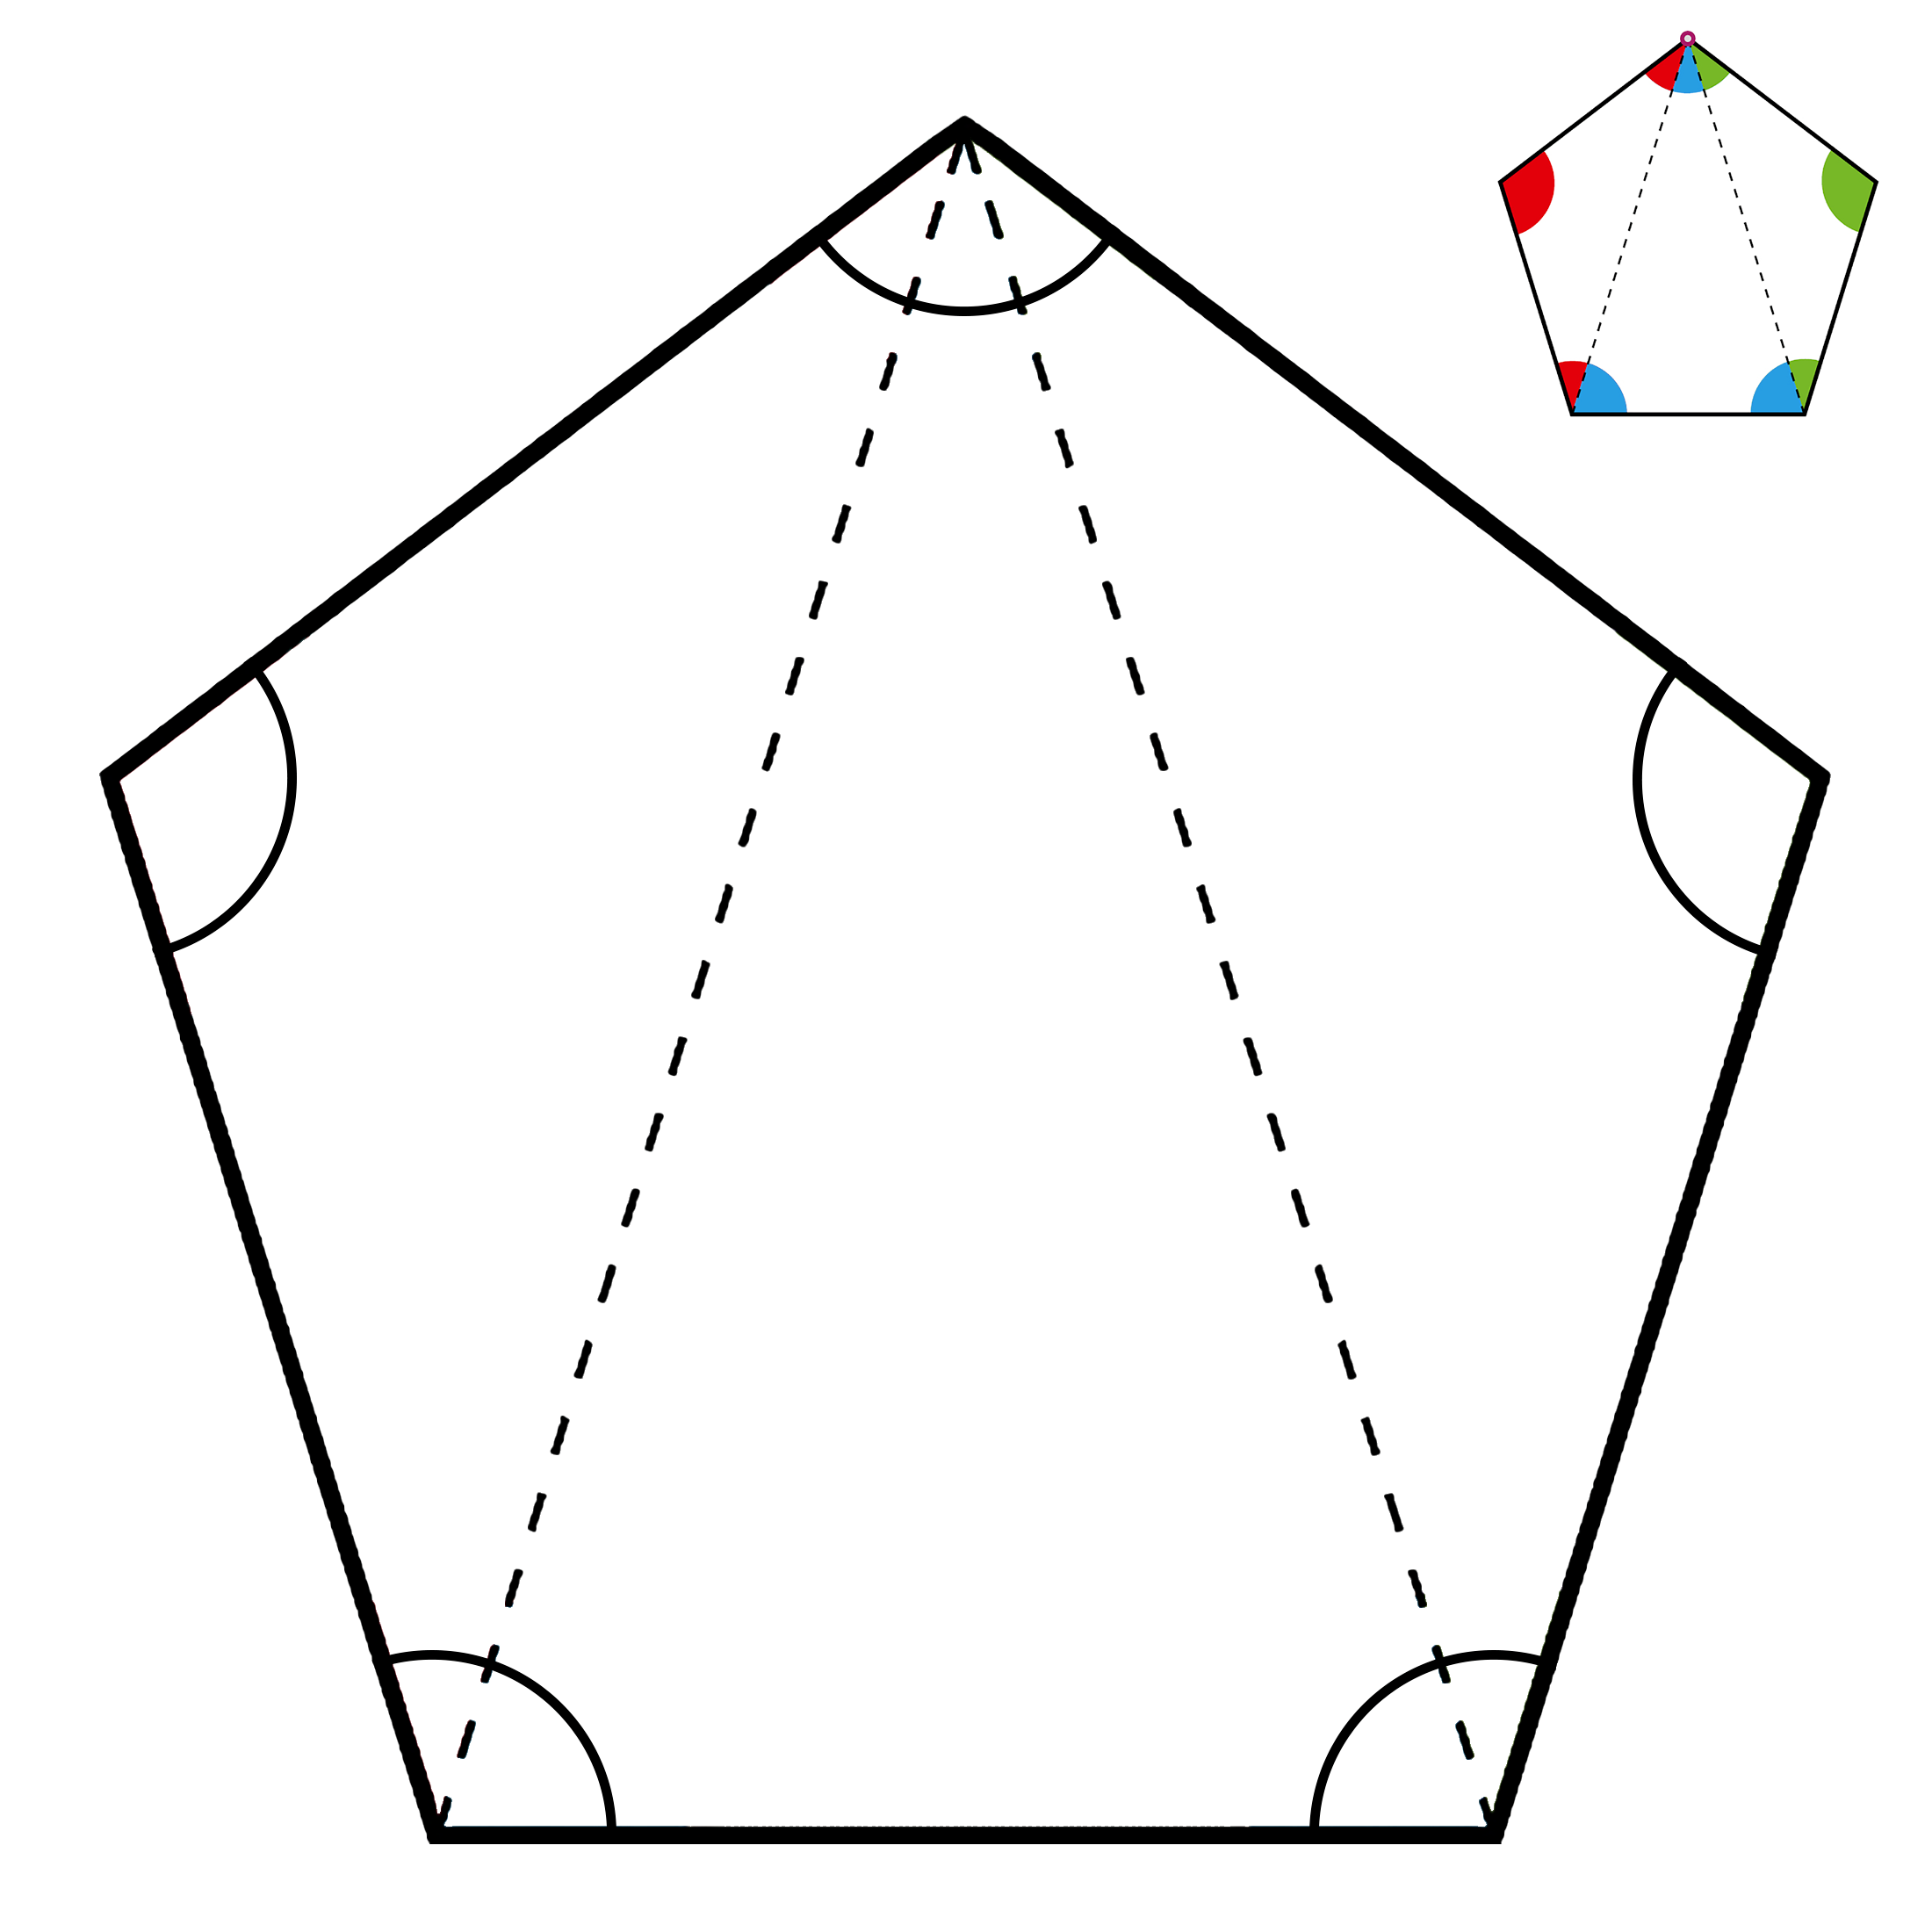 Figure geometriche - Calcolare somma angoli pentagono con esempio